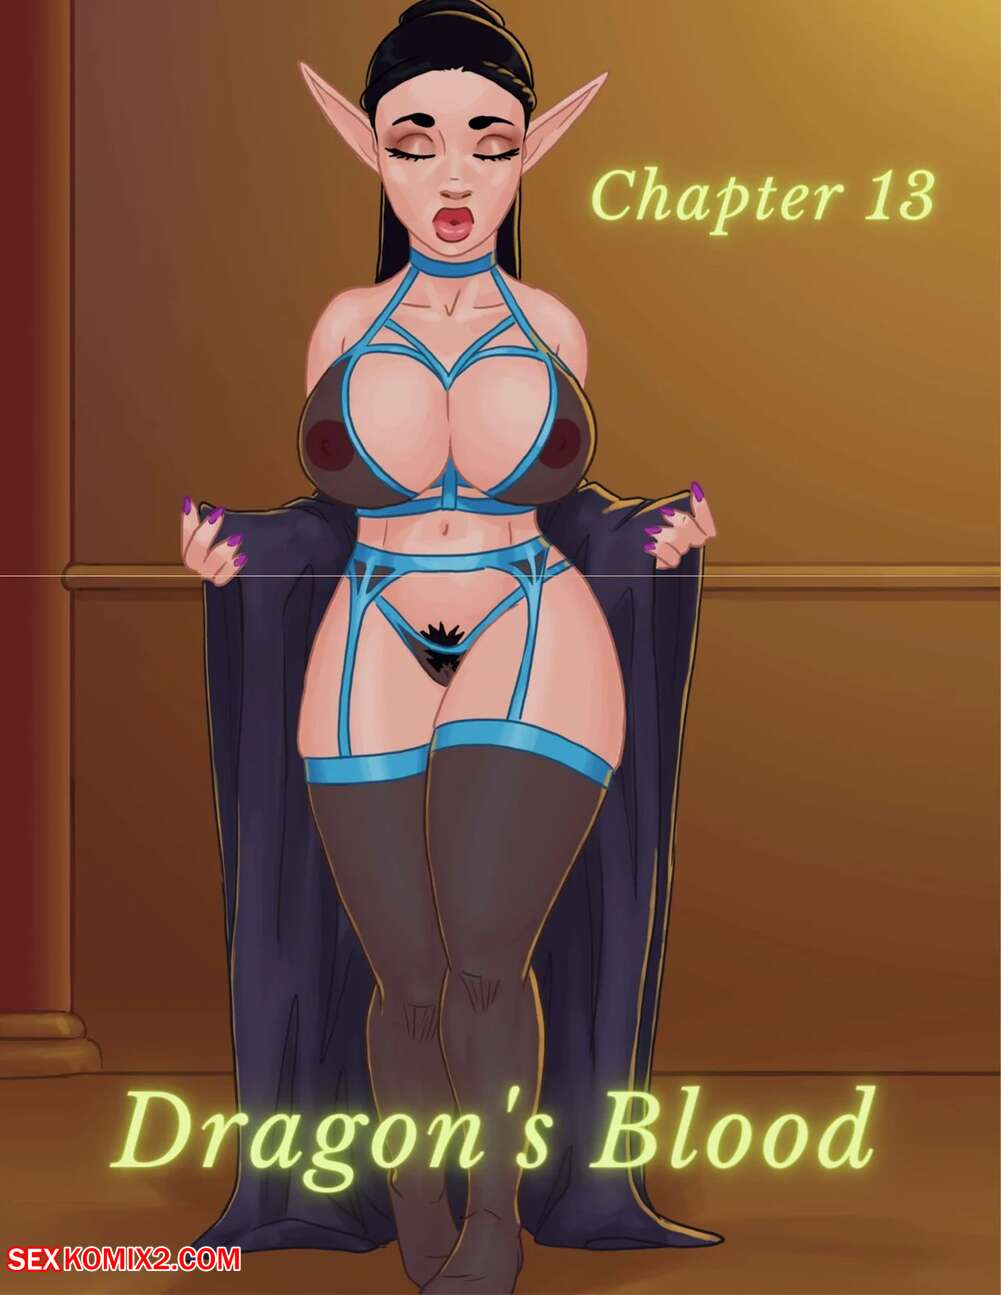 âœ…ï¸ Porn comic Dragons Blood. Chapter 13. Mitzz , RawlyRawls. Sex comic MILF  beauties were | Porn comics in English for adults only | sexkomix2.com